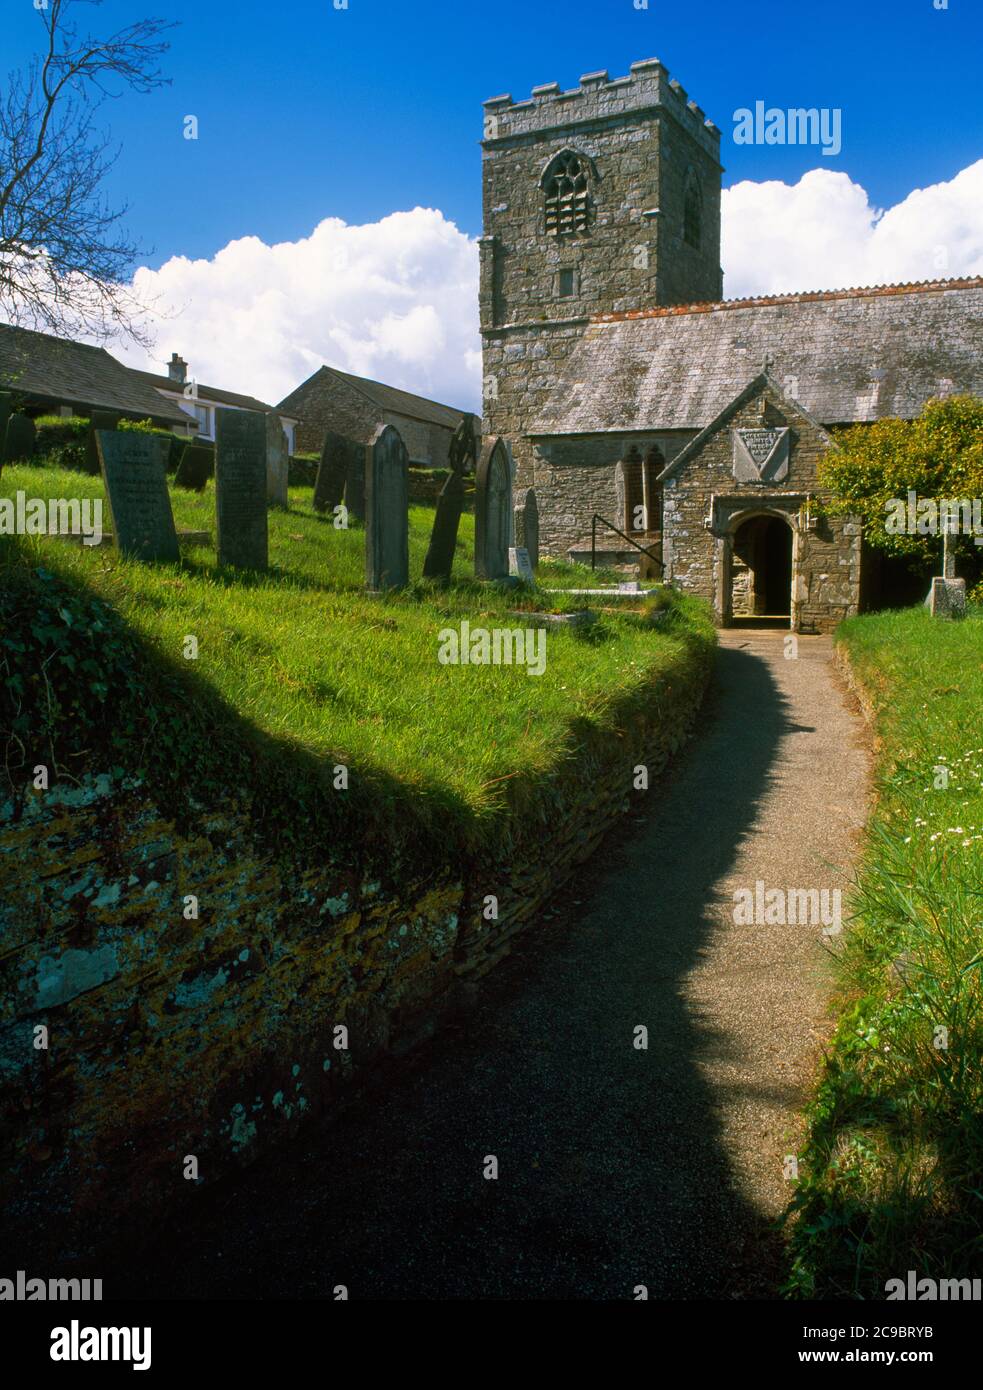 Blick NW von St Sampson's Church, Golant, Cornwall, England, Großbritannien: Das späte C15. Brunnenhaus, das an den S-Gang angrenzt, ist nur sichtbar L (W) von der S-Veranda. Stockfoto